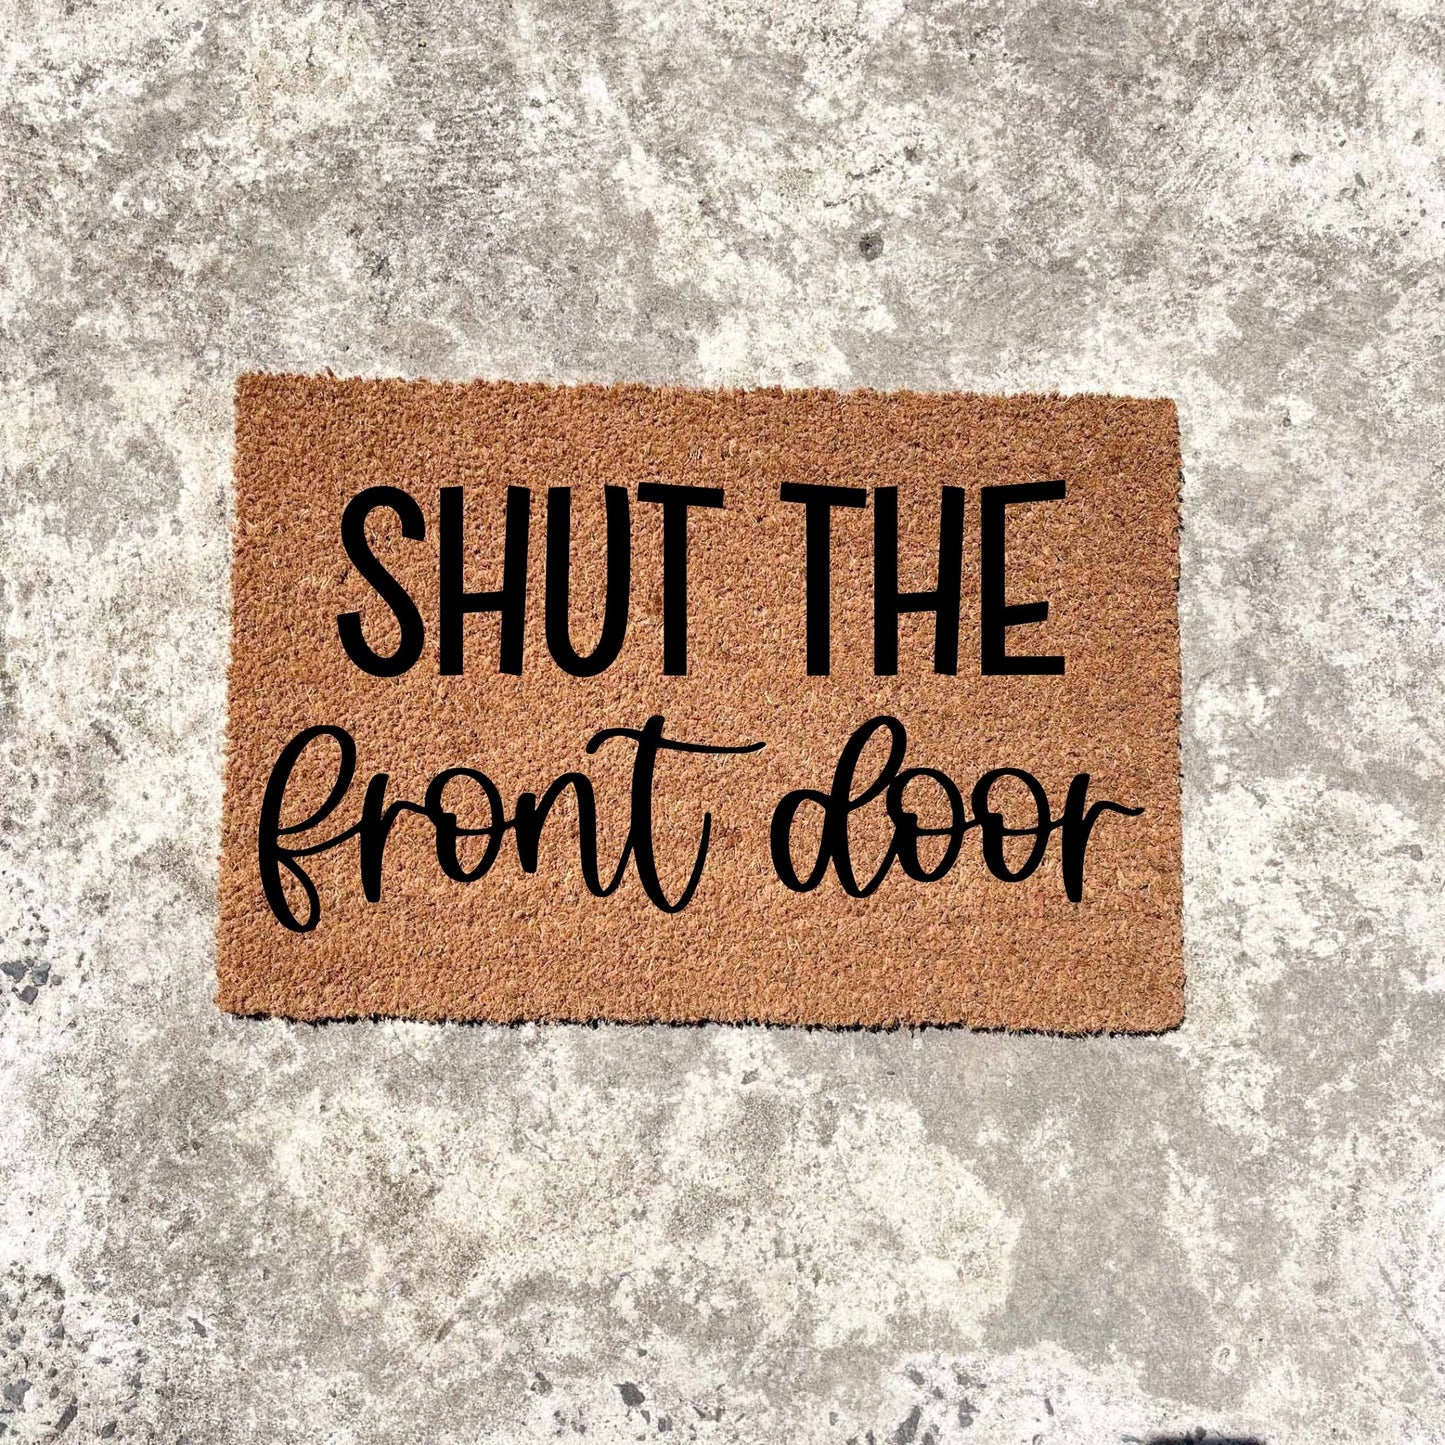 Shut the front door doormat, unique doormat, custom doormat, personalised doormat